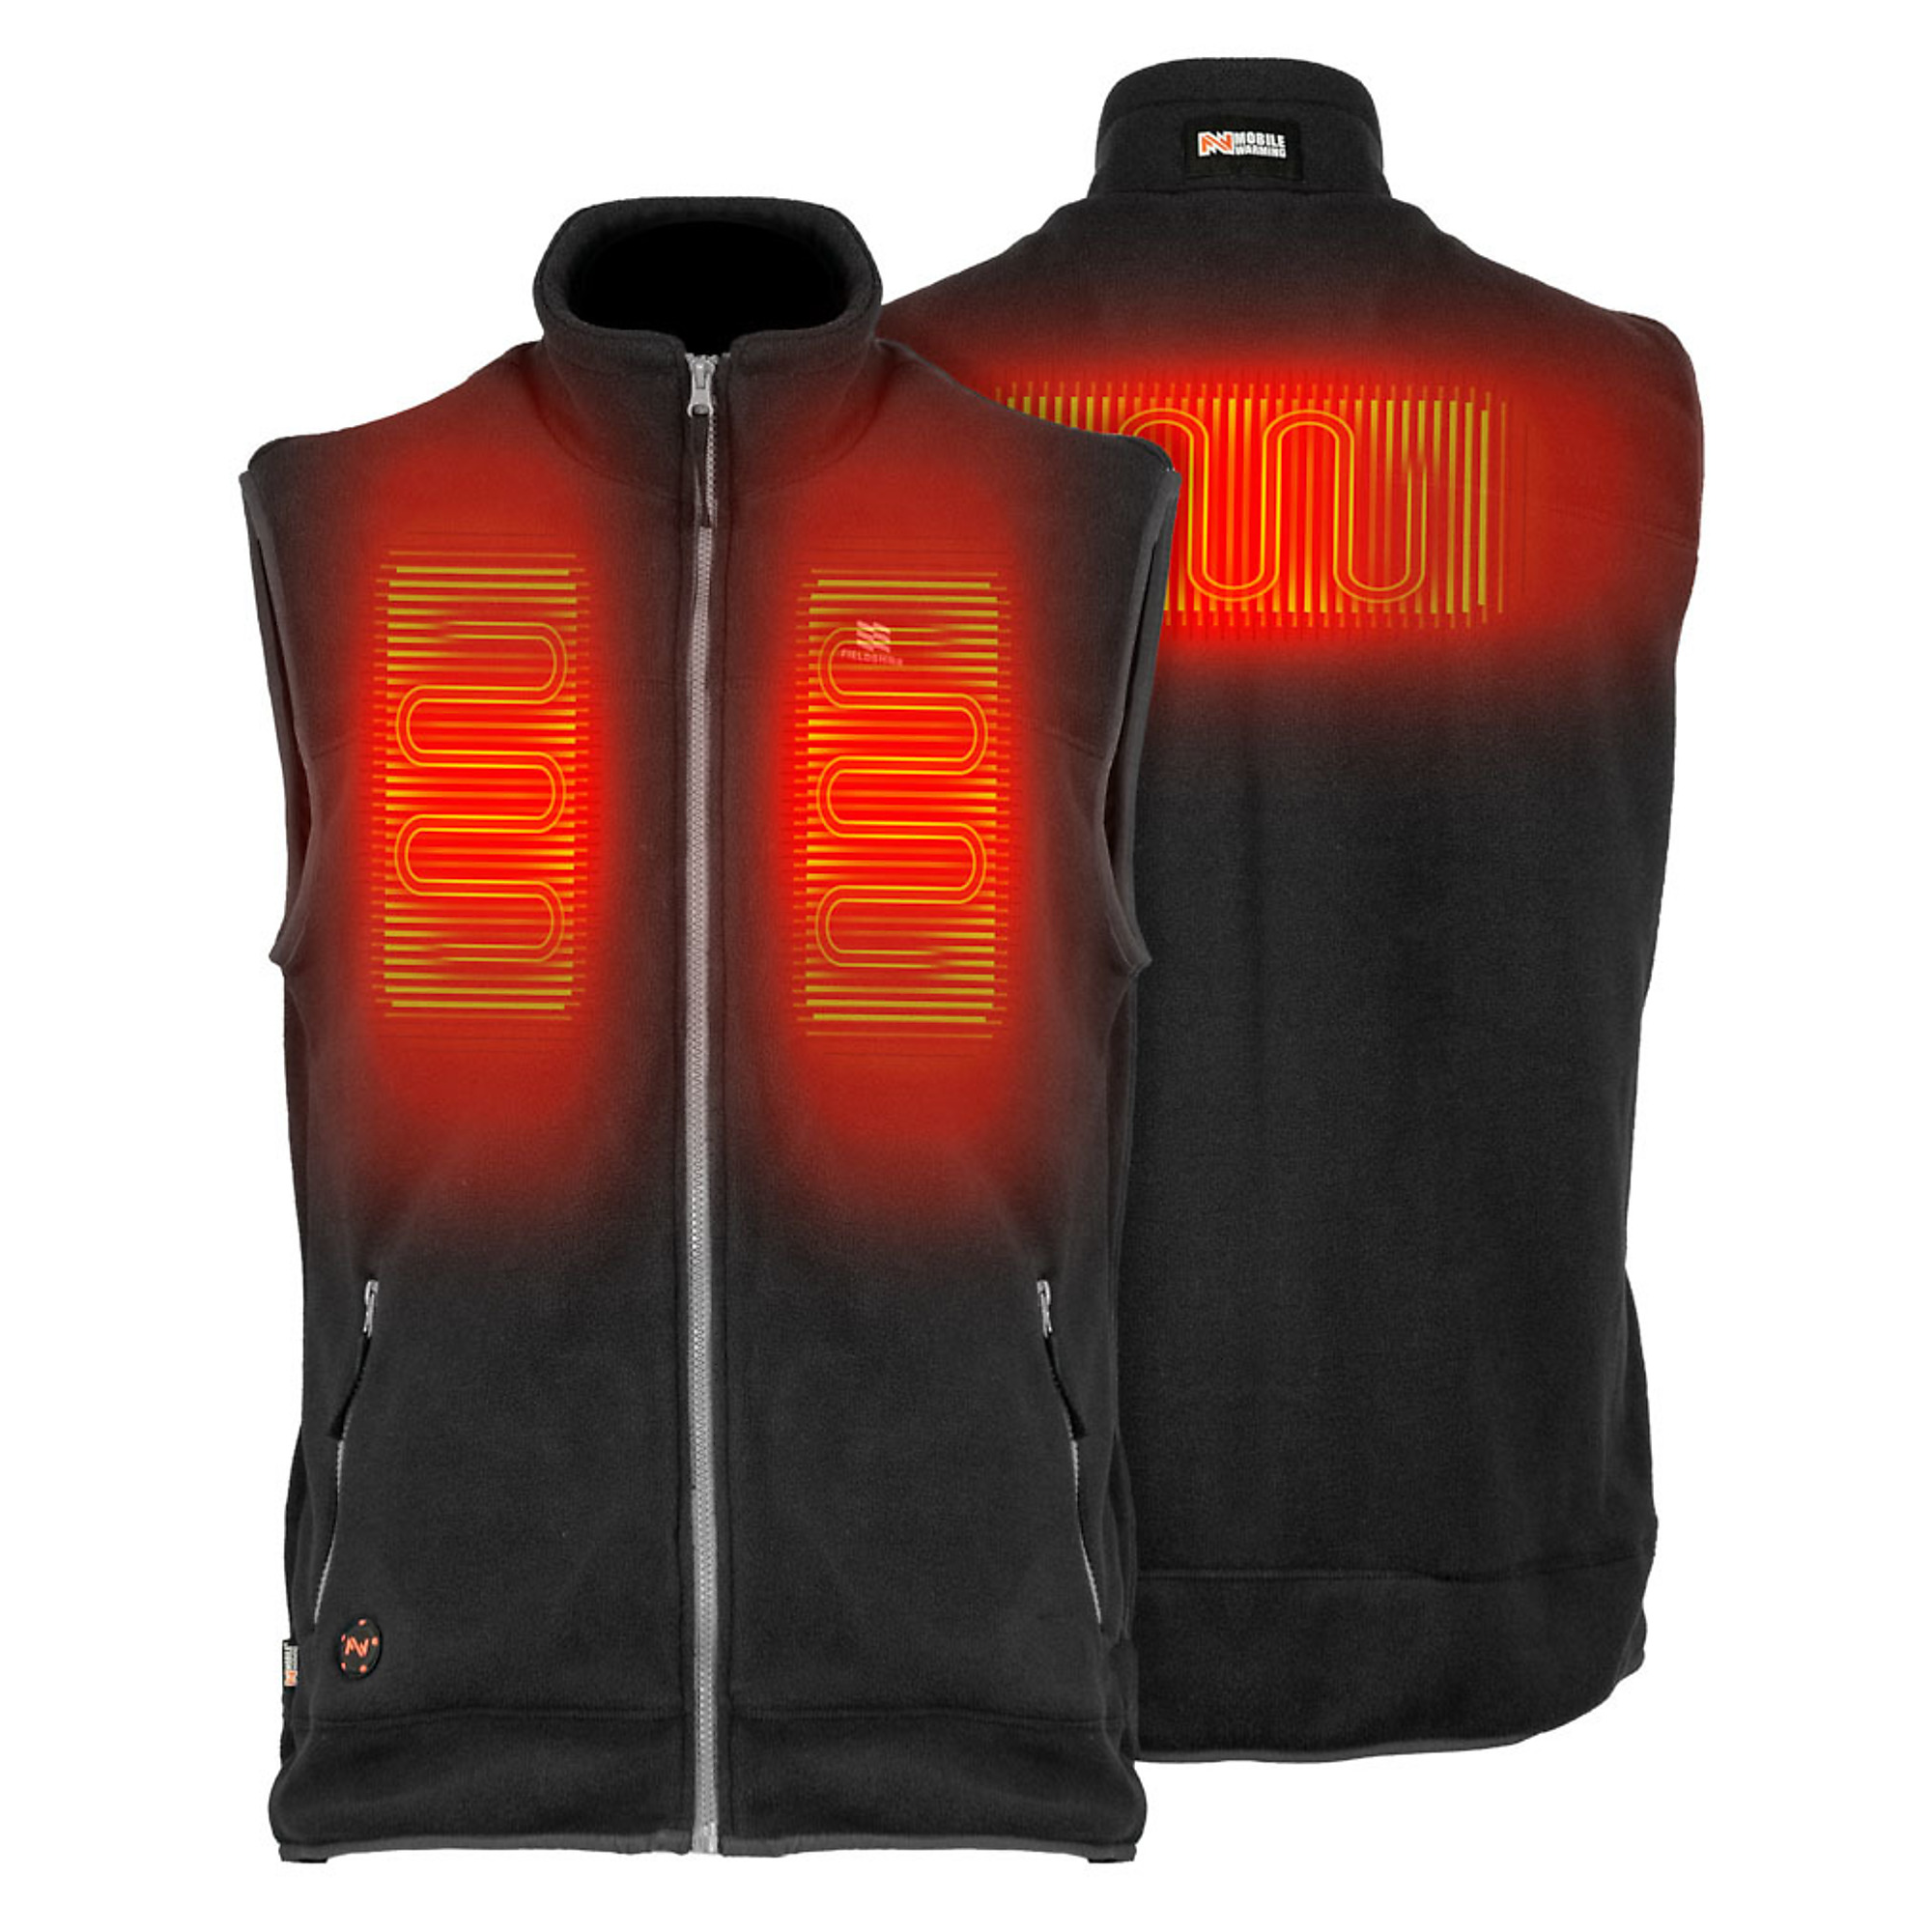 Fieldsheer, Men's Trek Heated Vest with 7.4v Battery, Size S, Color Black, Model MWMV17010222